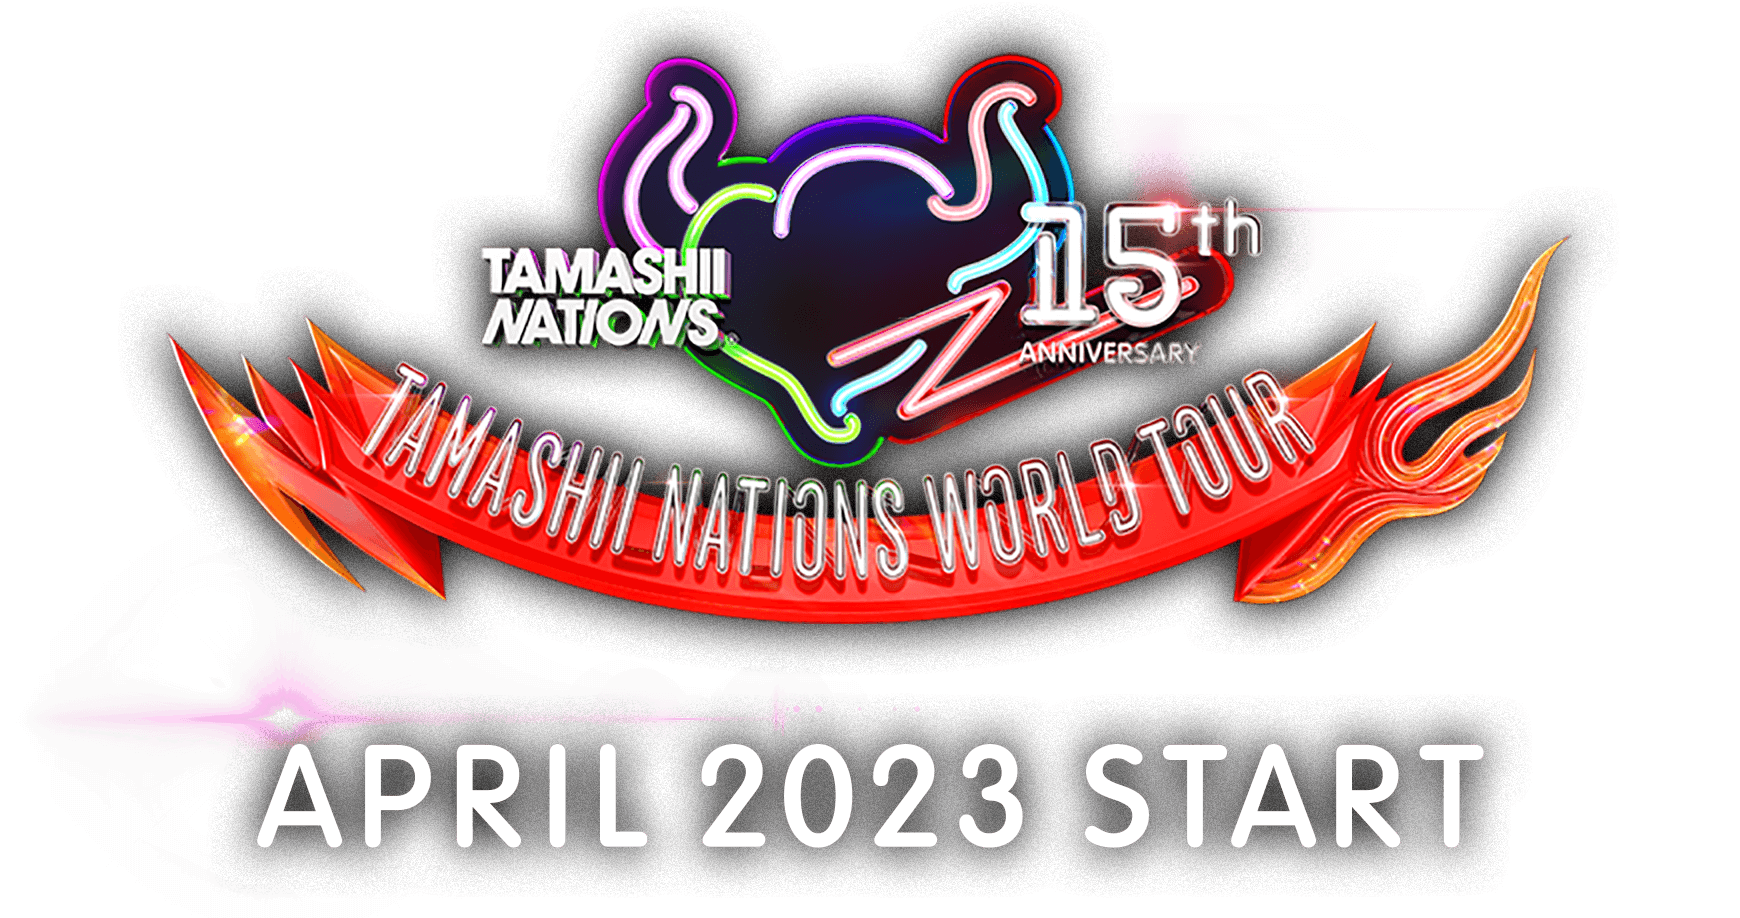 TAMASHII NATIONS WORLD TOUR  APRIL 2023 START